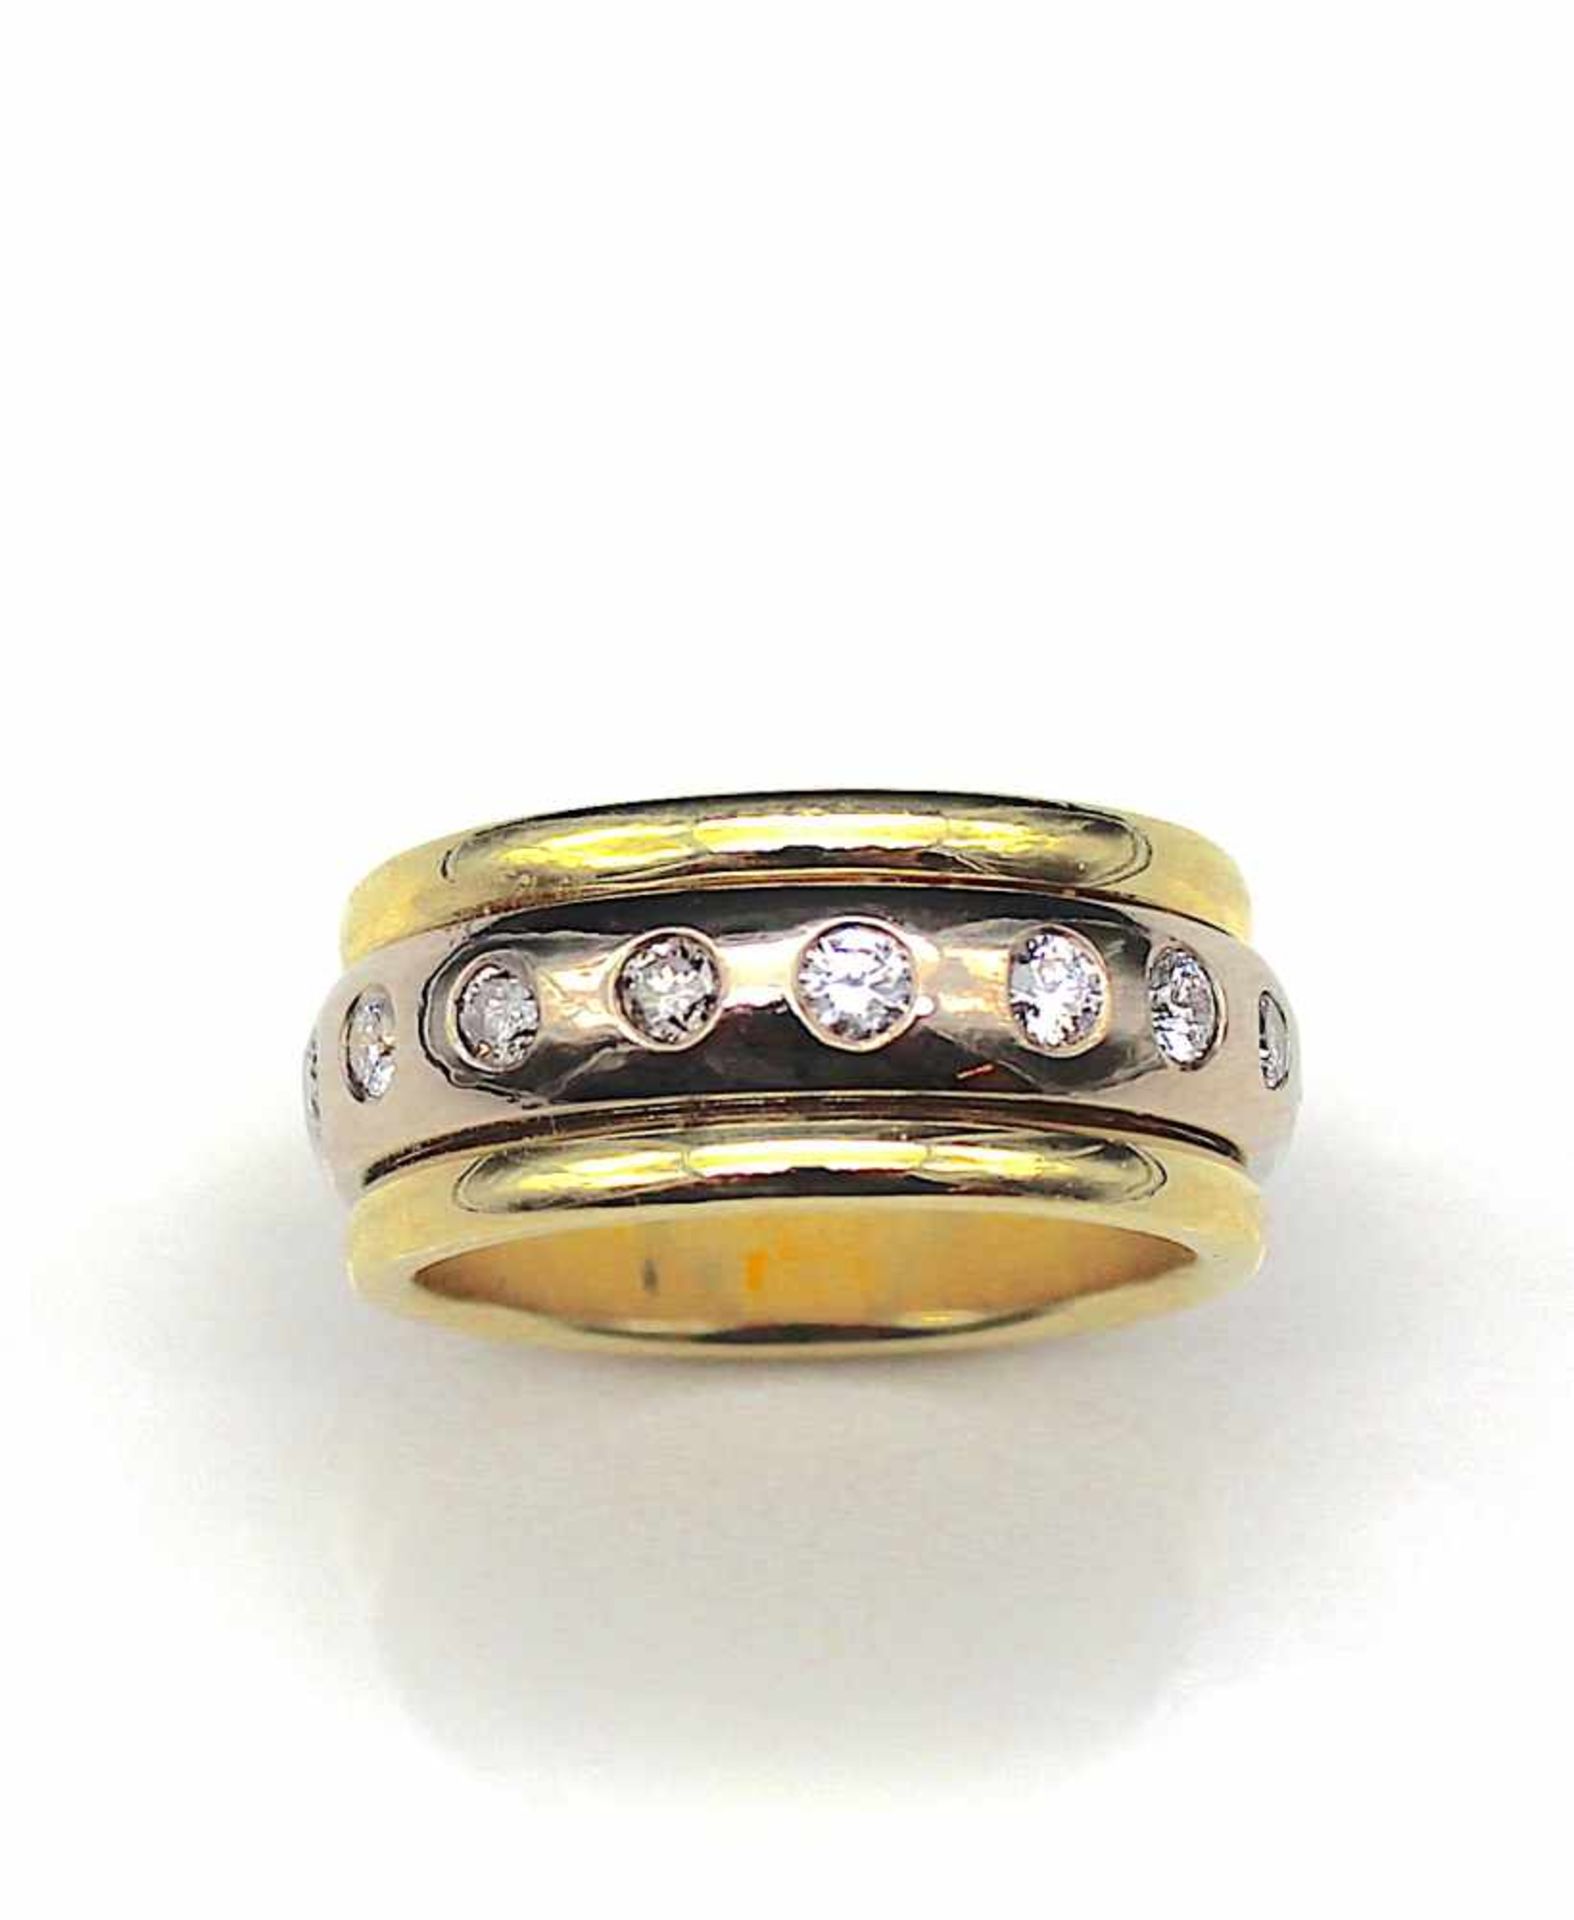 Ring in 585er Gelb-und Weißgold gearbeitet mit 17 Brillanten, gesamt ca.1,4 ct, Qualität: SI - P, - Bild 3 aus 3